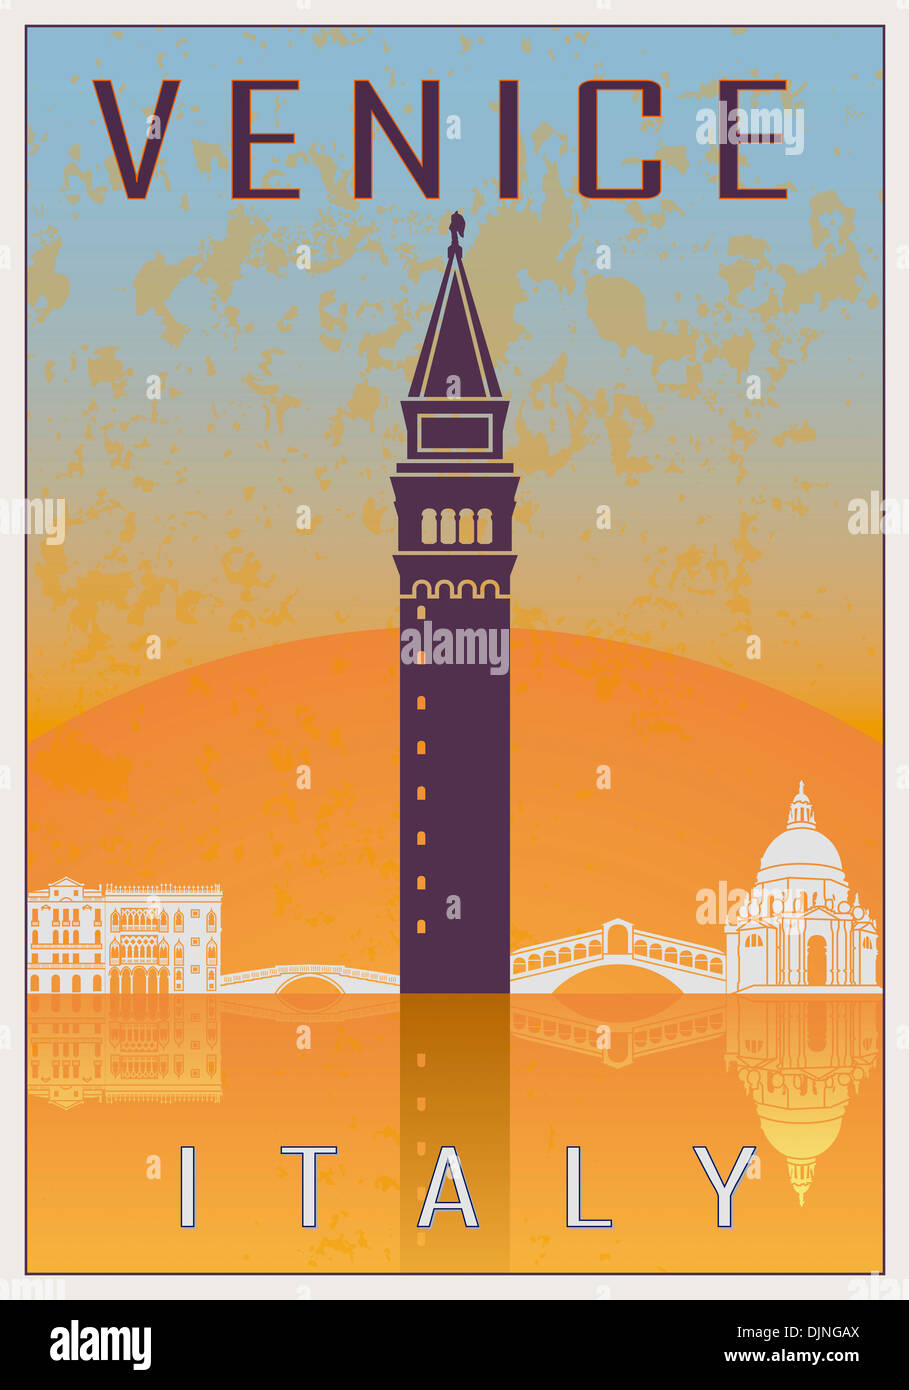 Venice vintage poster Stock Photo - Alamy